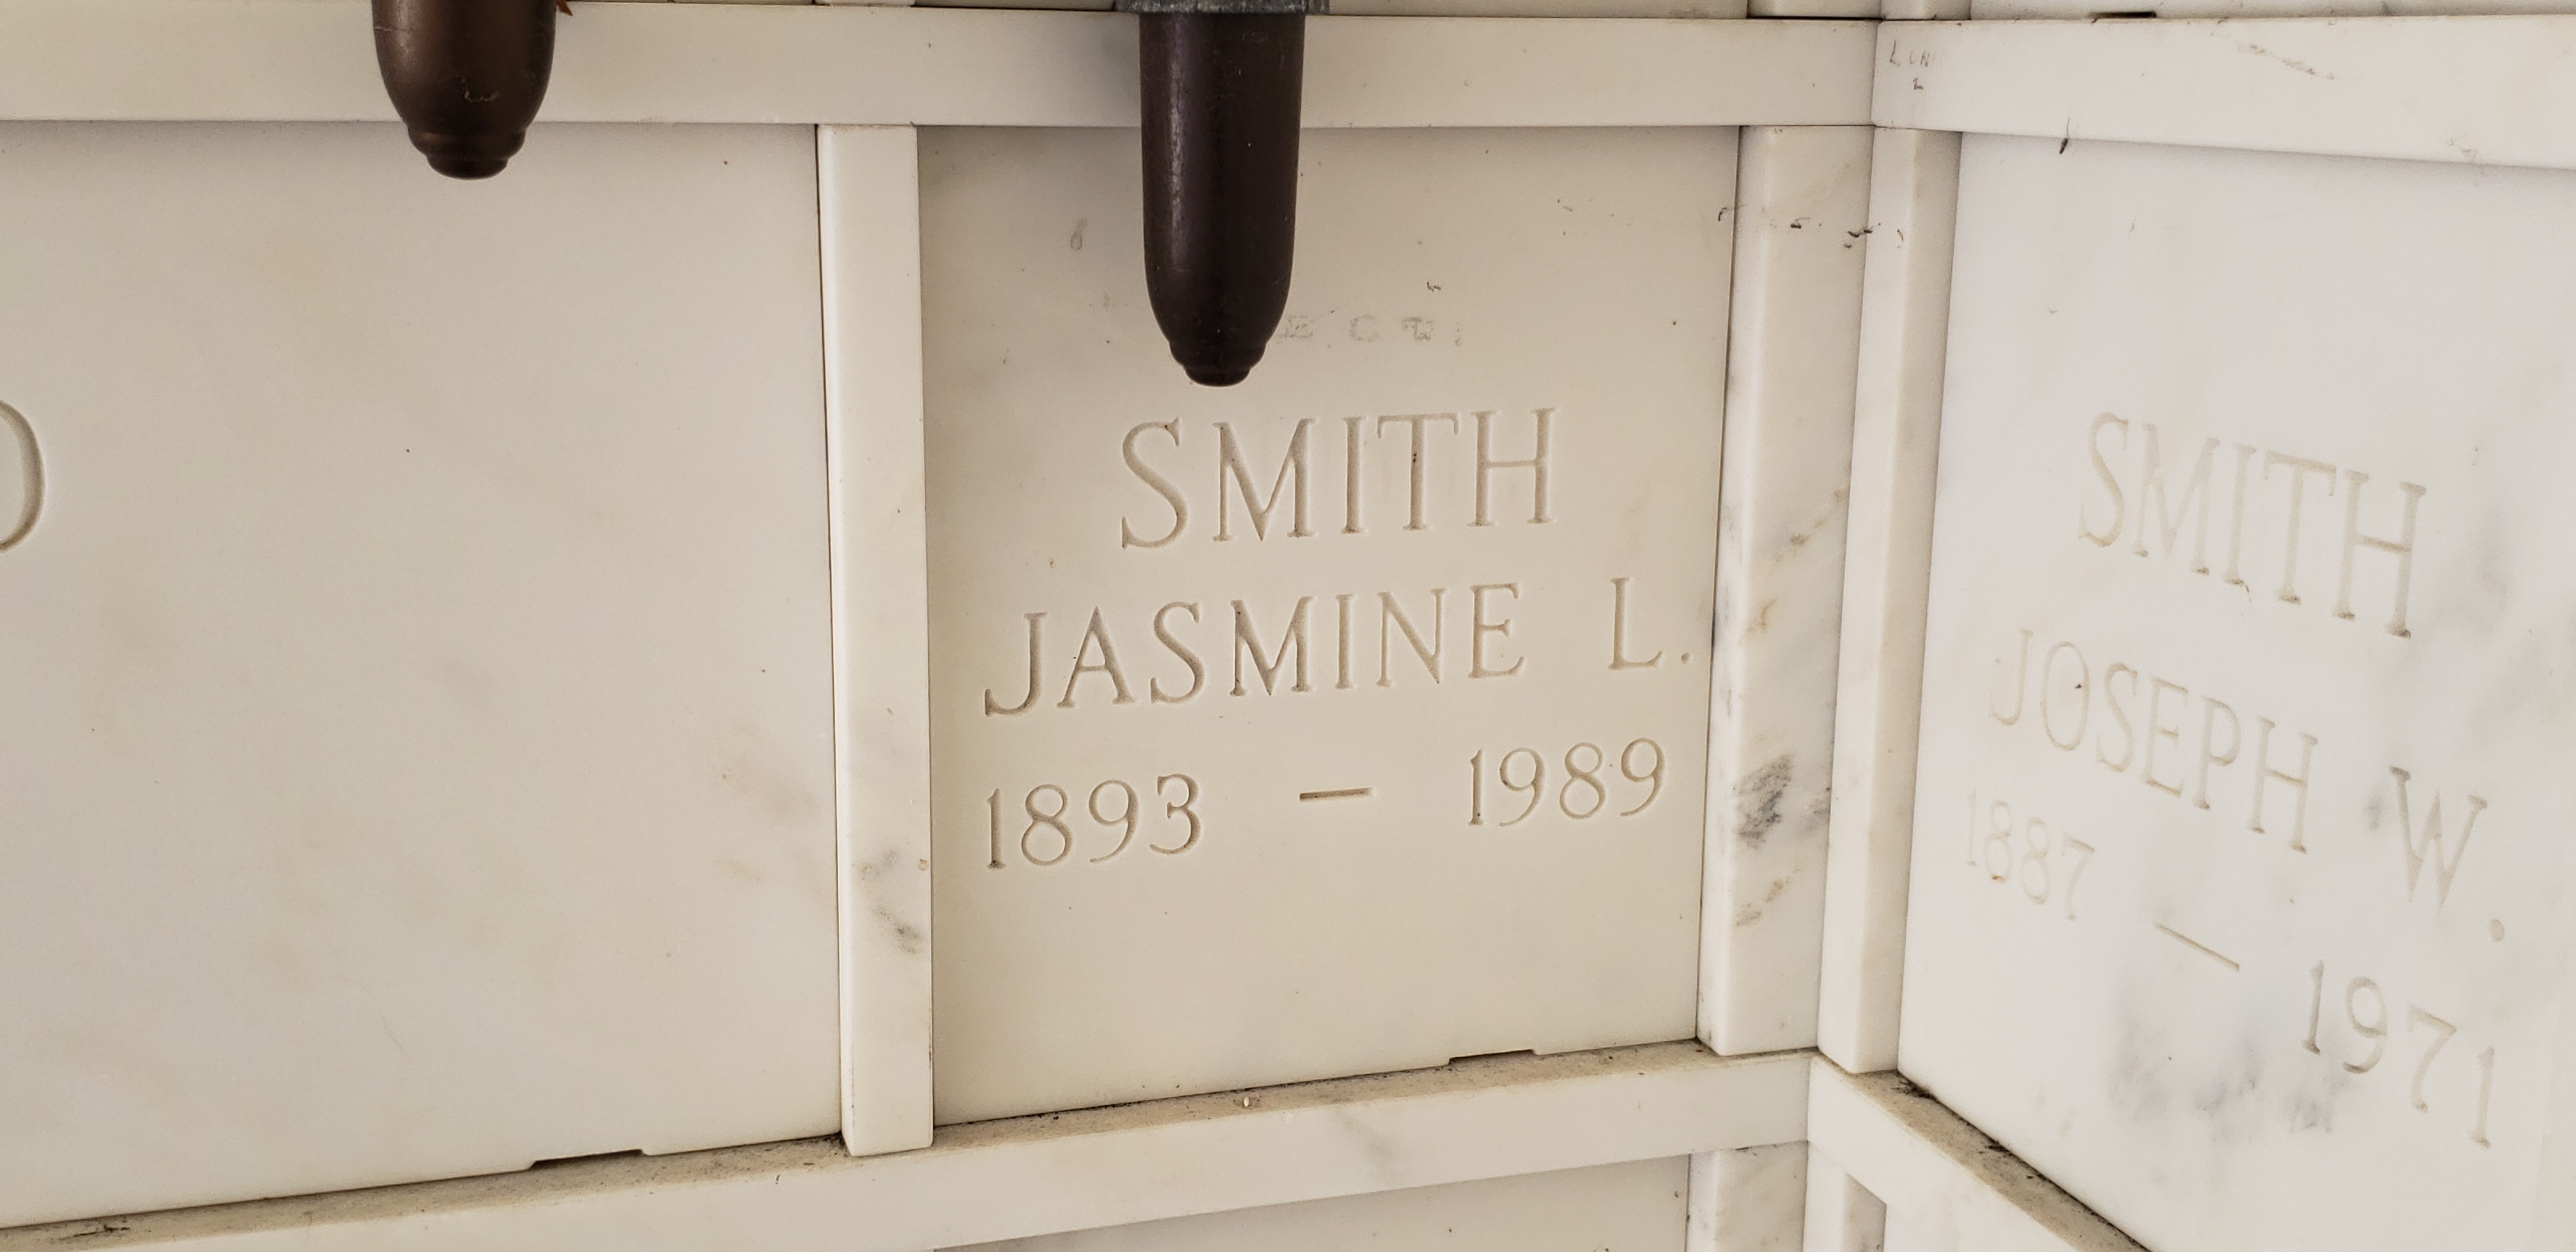 Jasmine L Smith